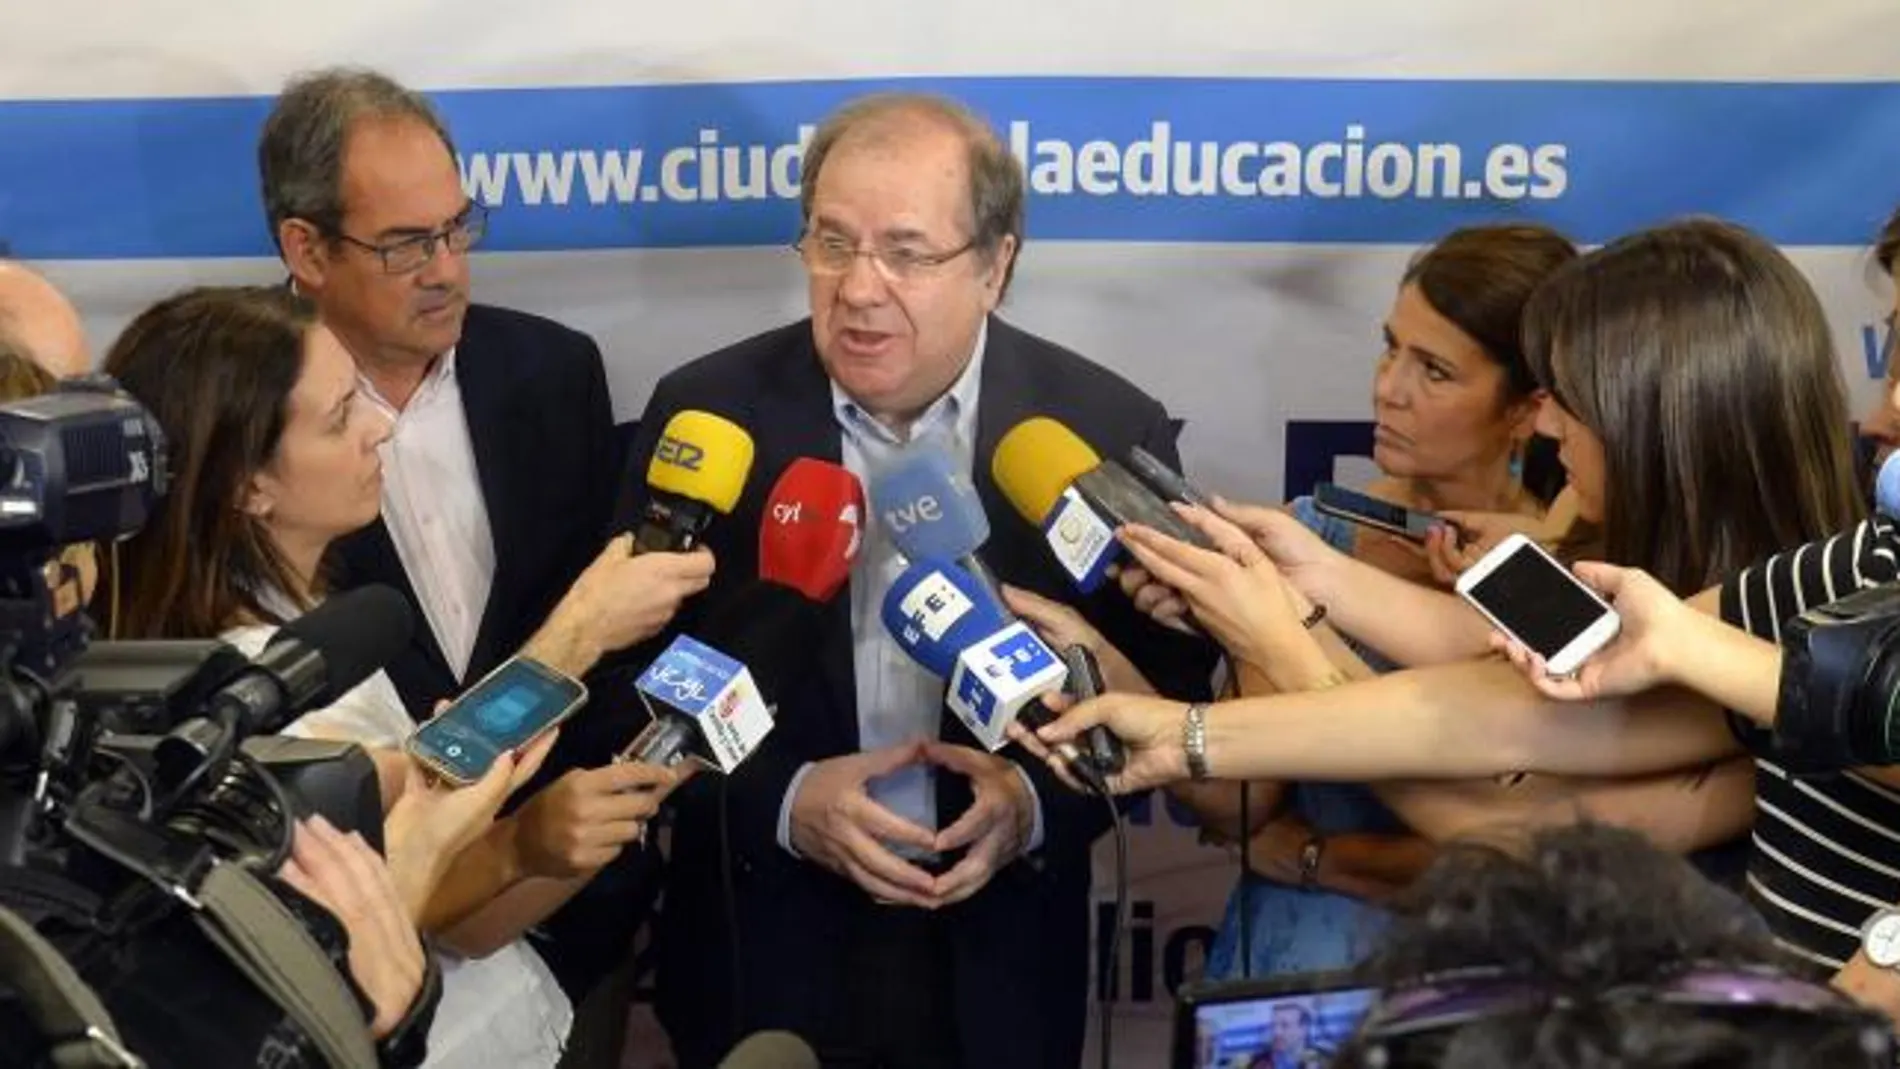 El presidente de la Junta de Castilla y León, Juan Vicente Herrera, da explicaciones ante la prensa sobre la denuncia presentada contra la Fundación